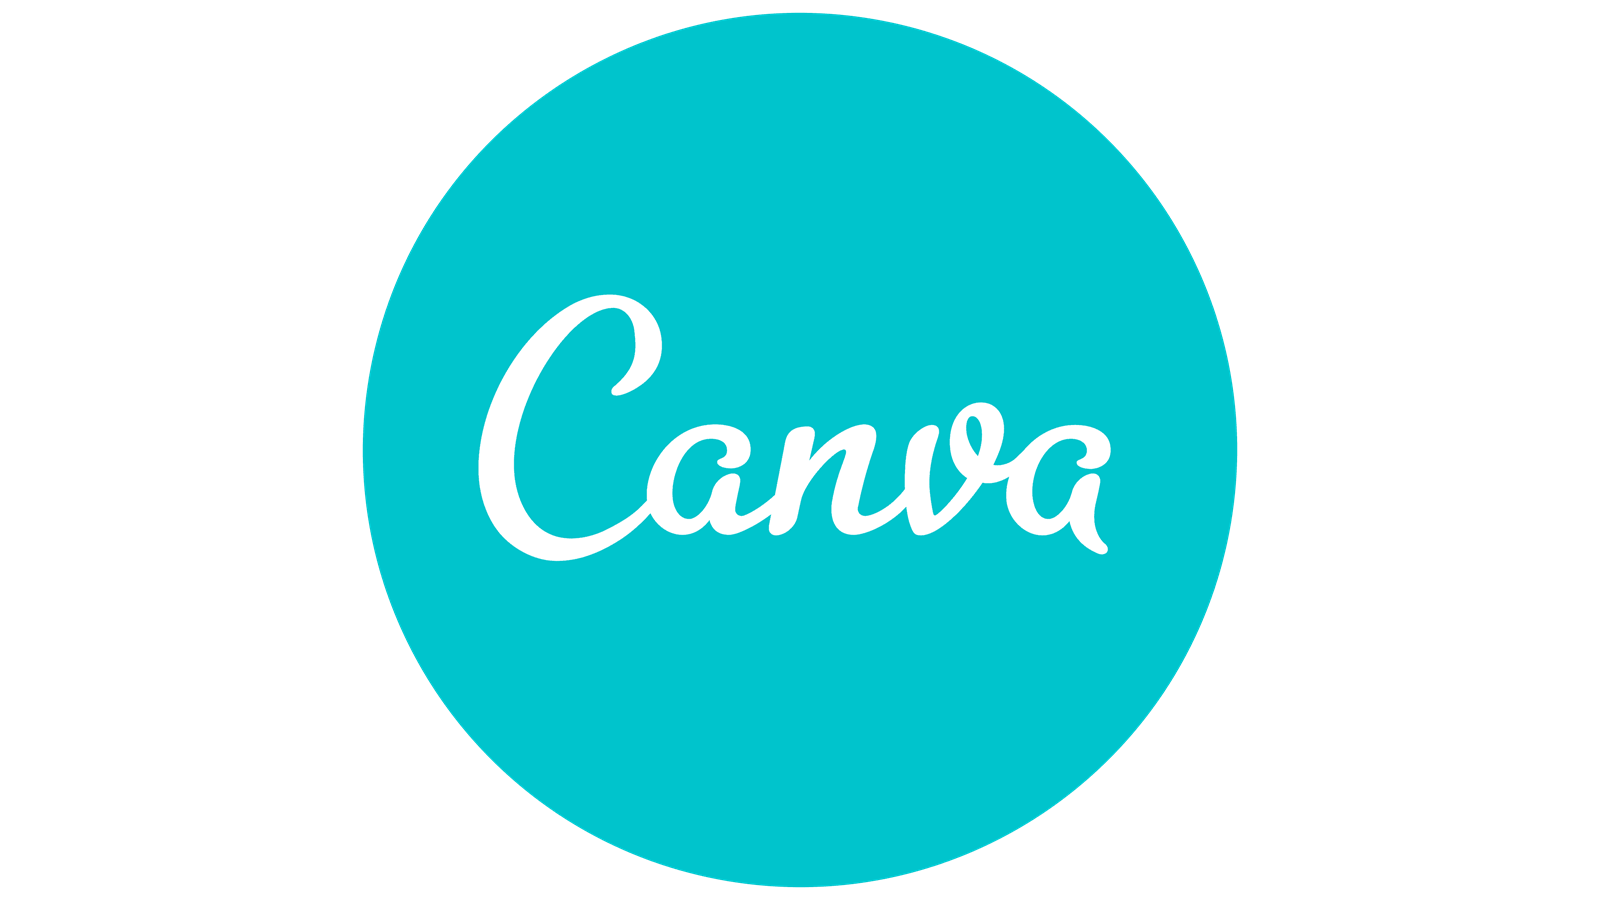 Canva-Logo.png